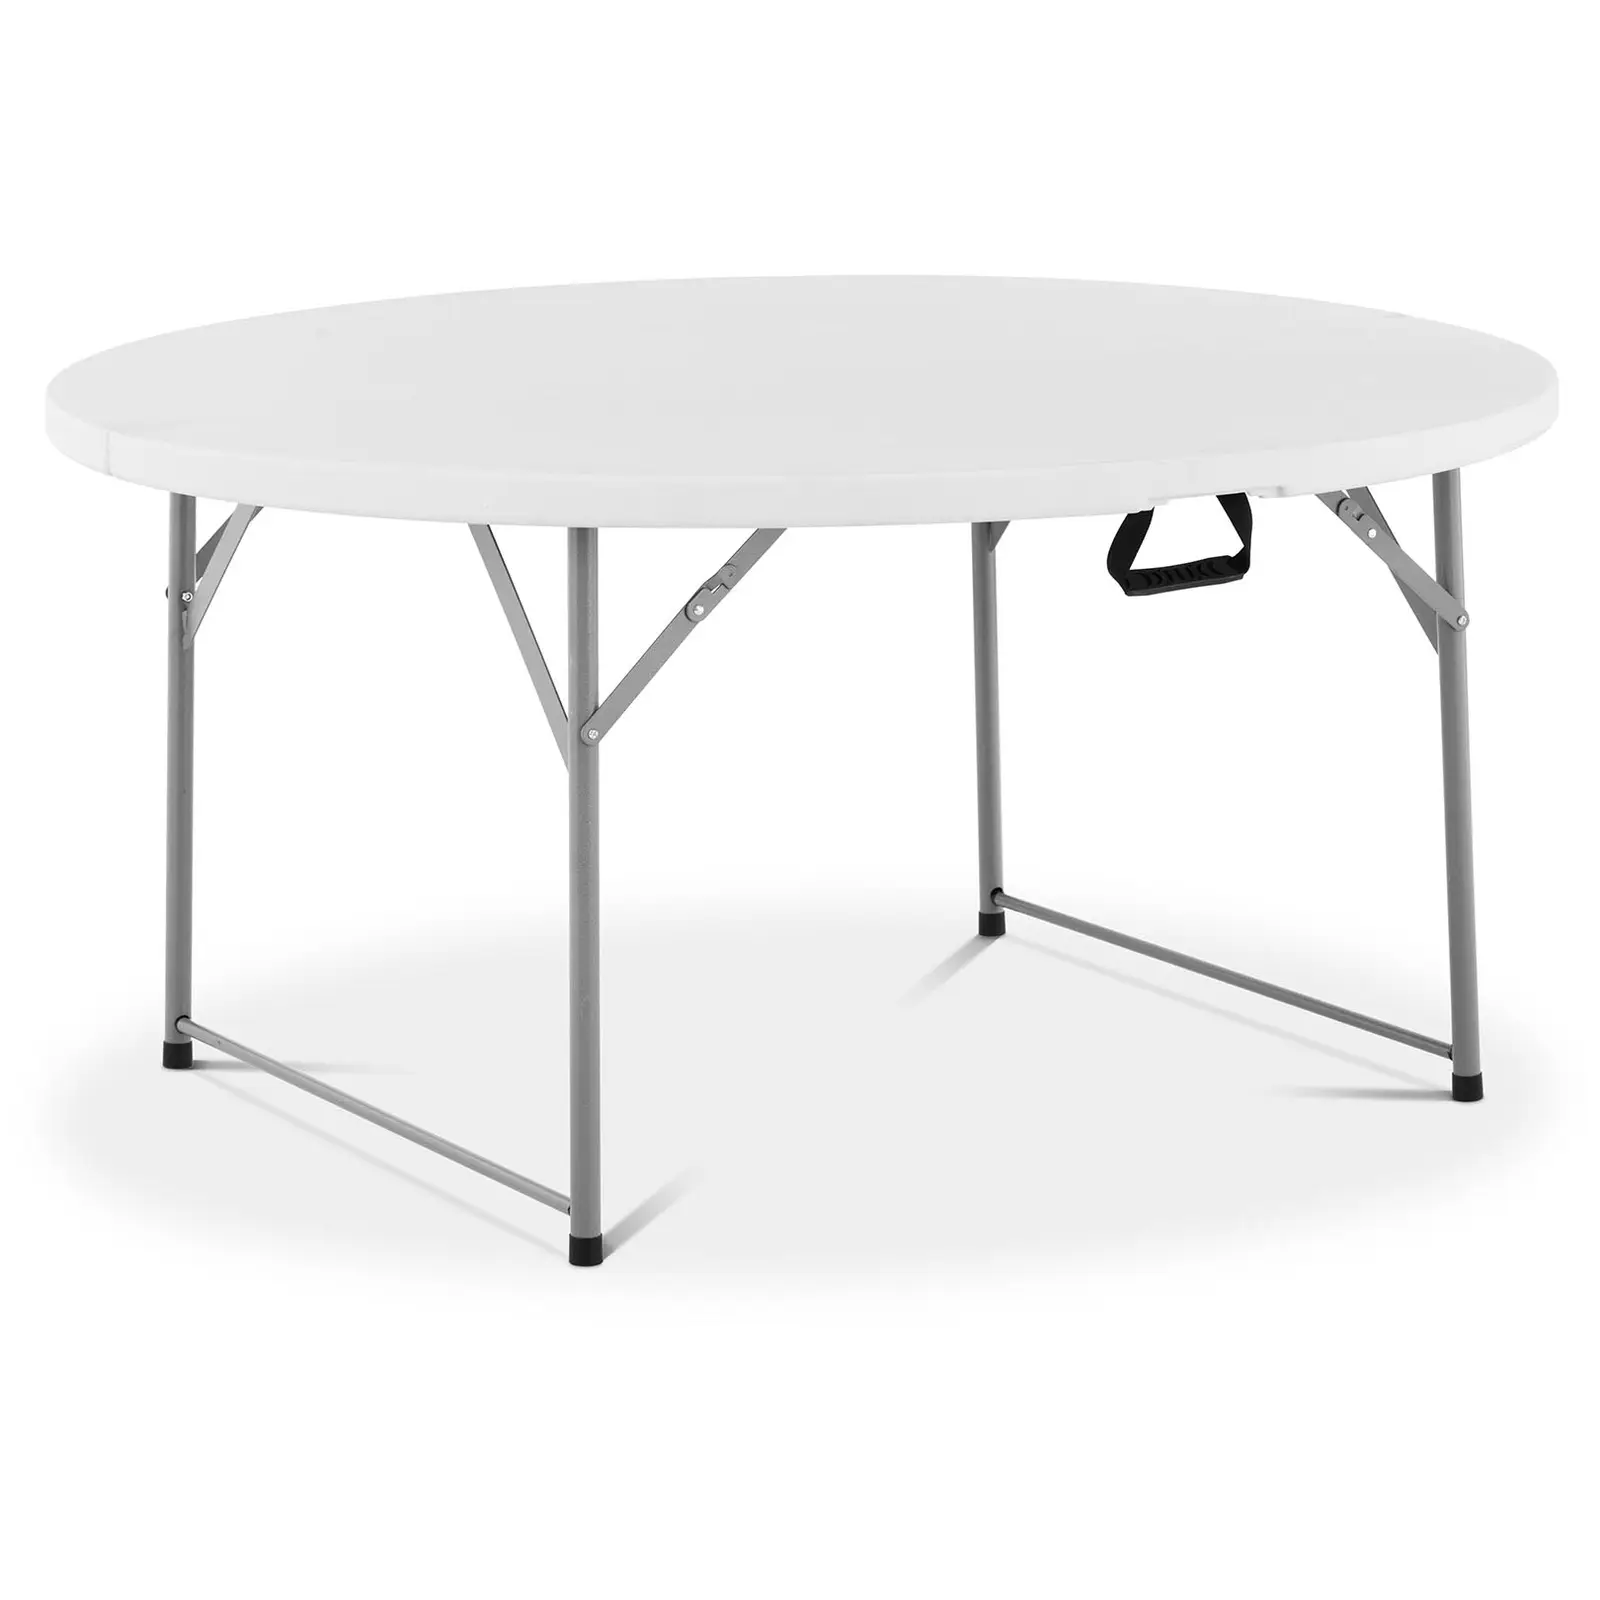 Kerek összecsukható asztal - Ø 1500 x 740 mm - Royal Catering - 150 kg - kültéri/beltéri - fehér